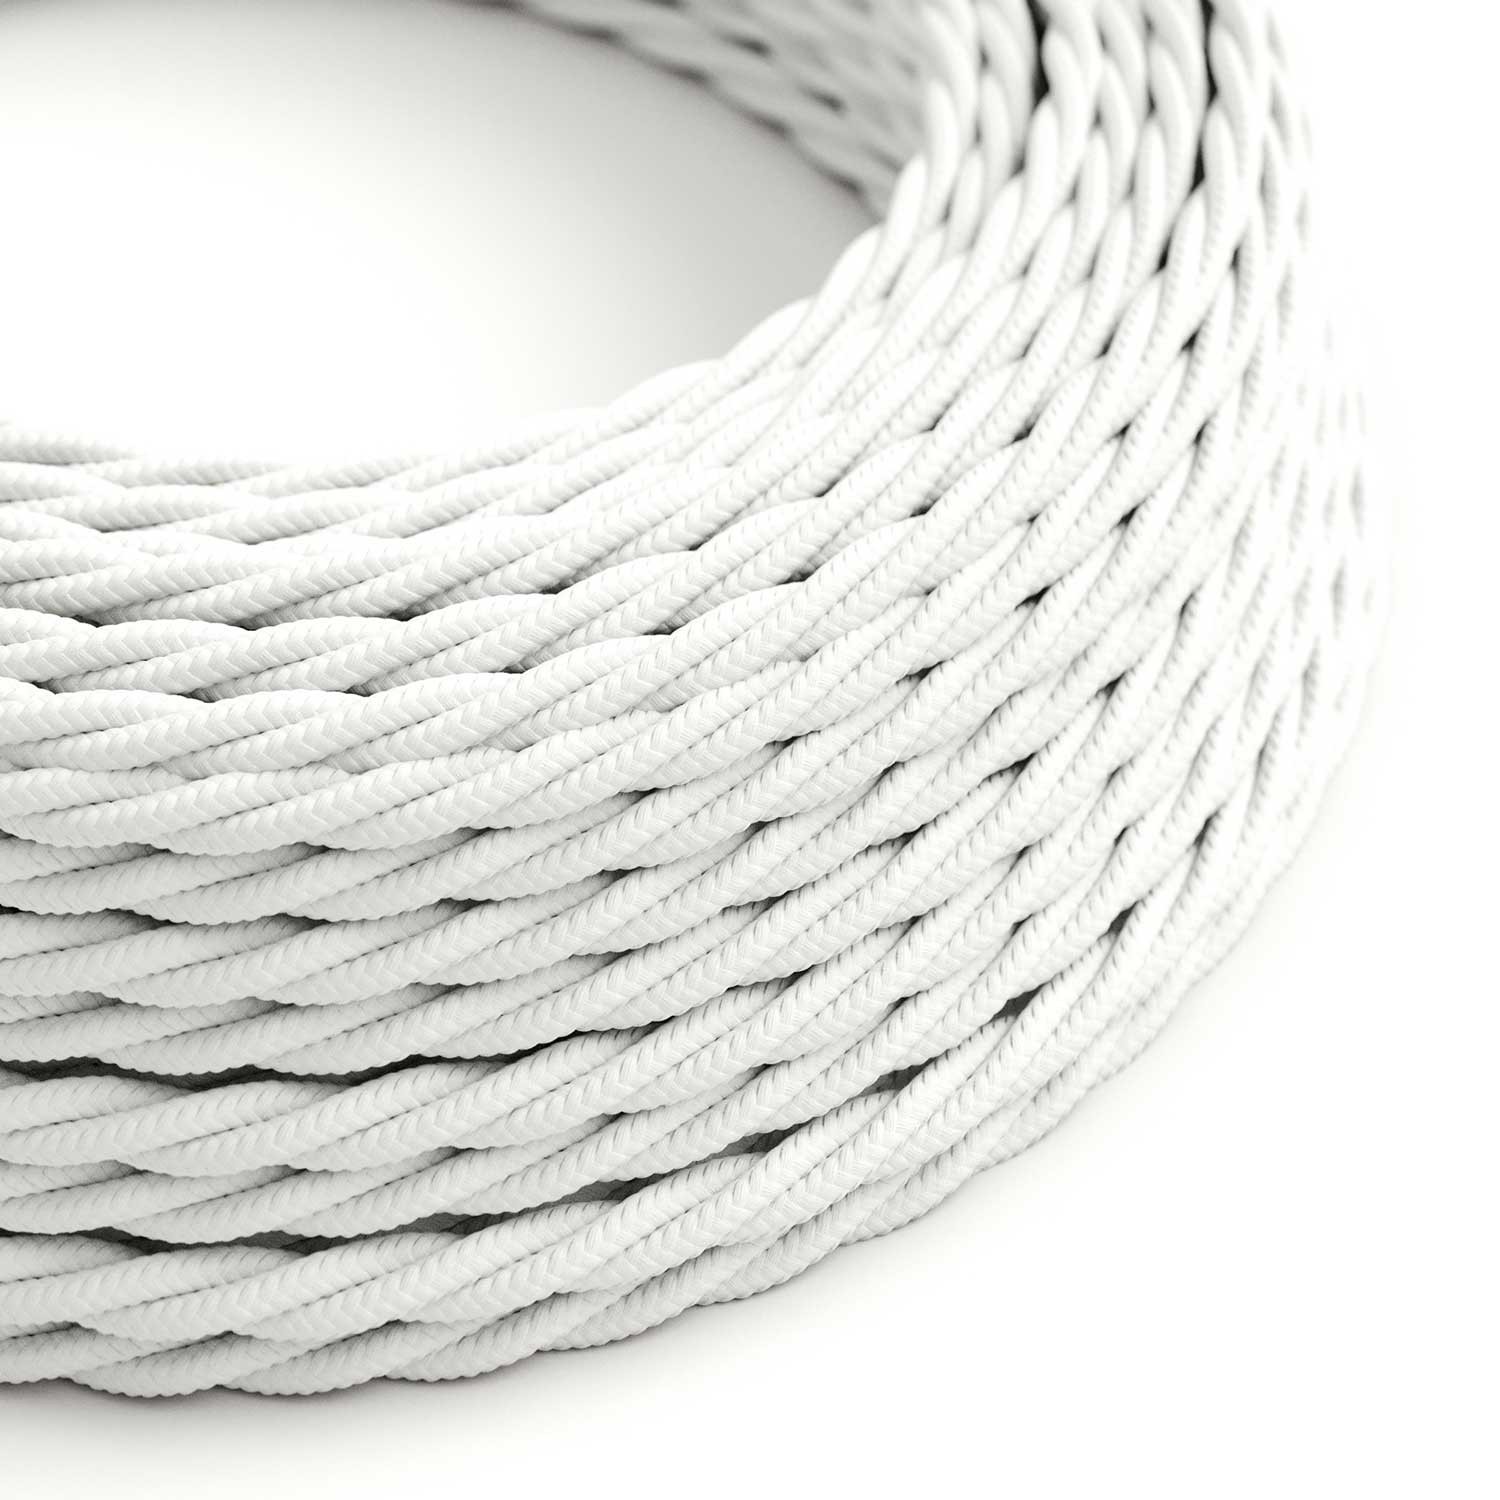 Gevlochten flexibele electriciteit textielkabel van viscose. TM01 - wit